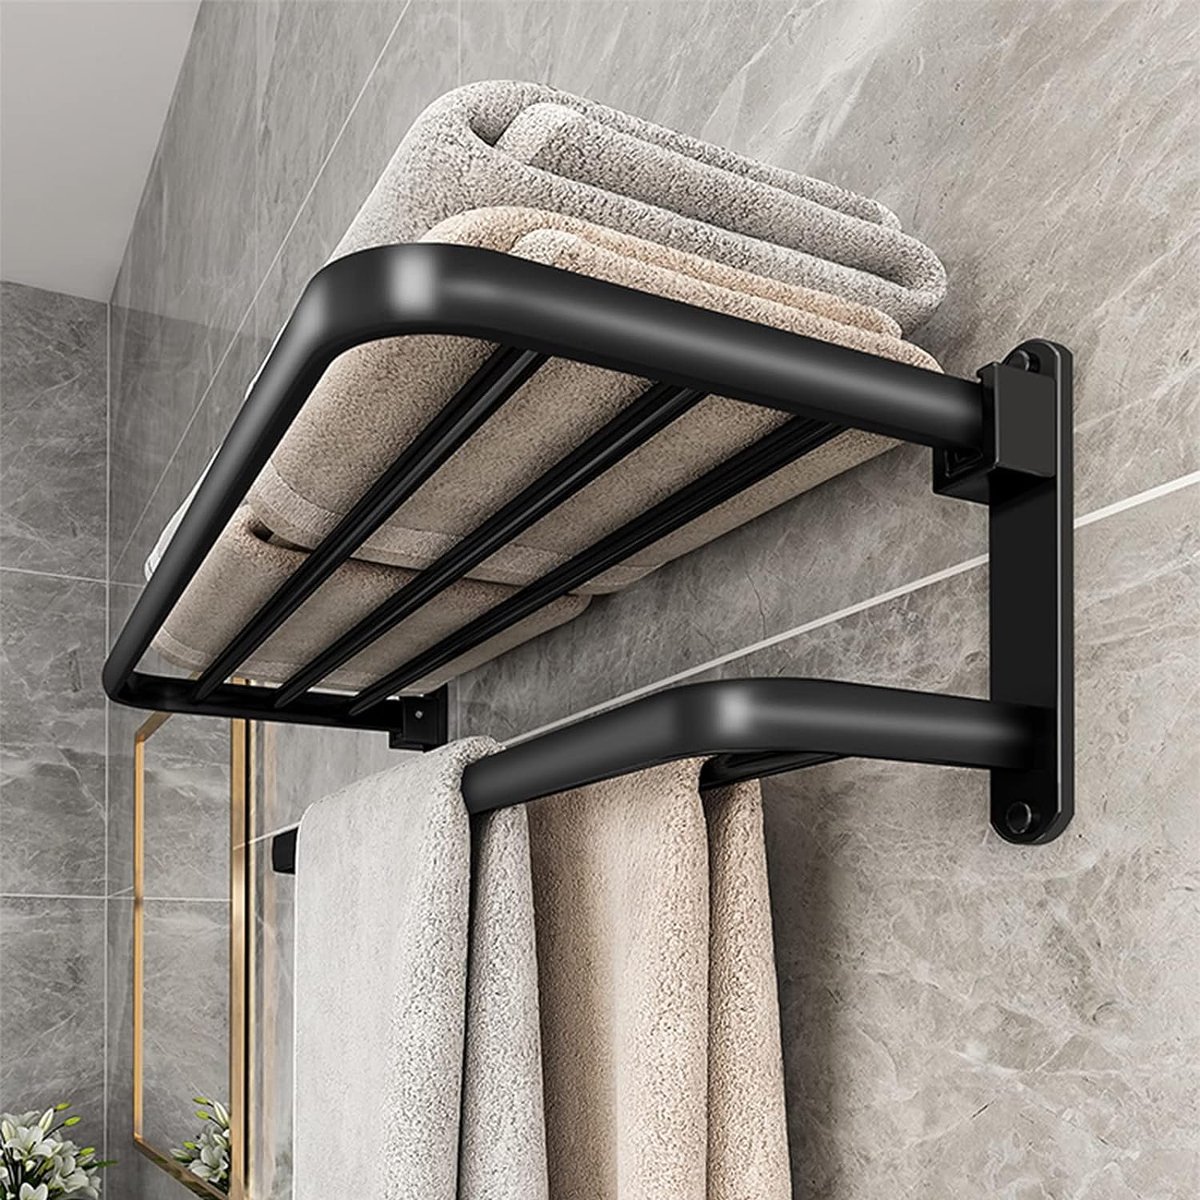 Handdoekrek, wandgemonteerd handdoekrek zonder boren voor de badkamer met 2 handdoekrekken, aluminium badhanddoekhouder, matzwart, 58 cm.